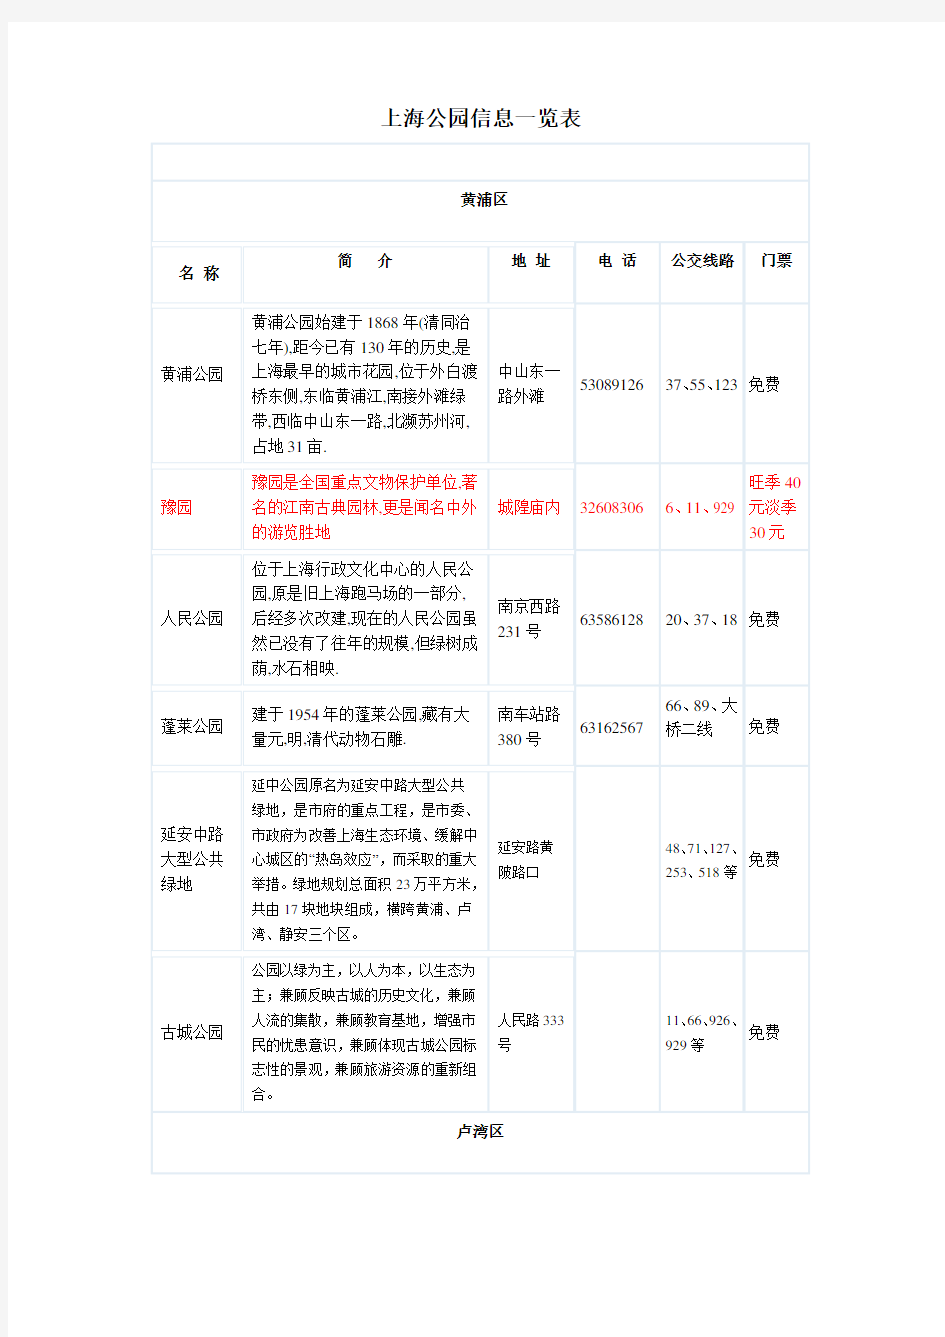 (完整word版)上海公园信息一览表